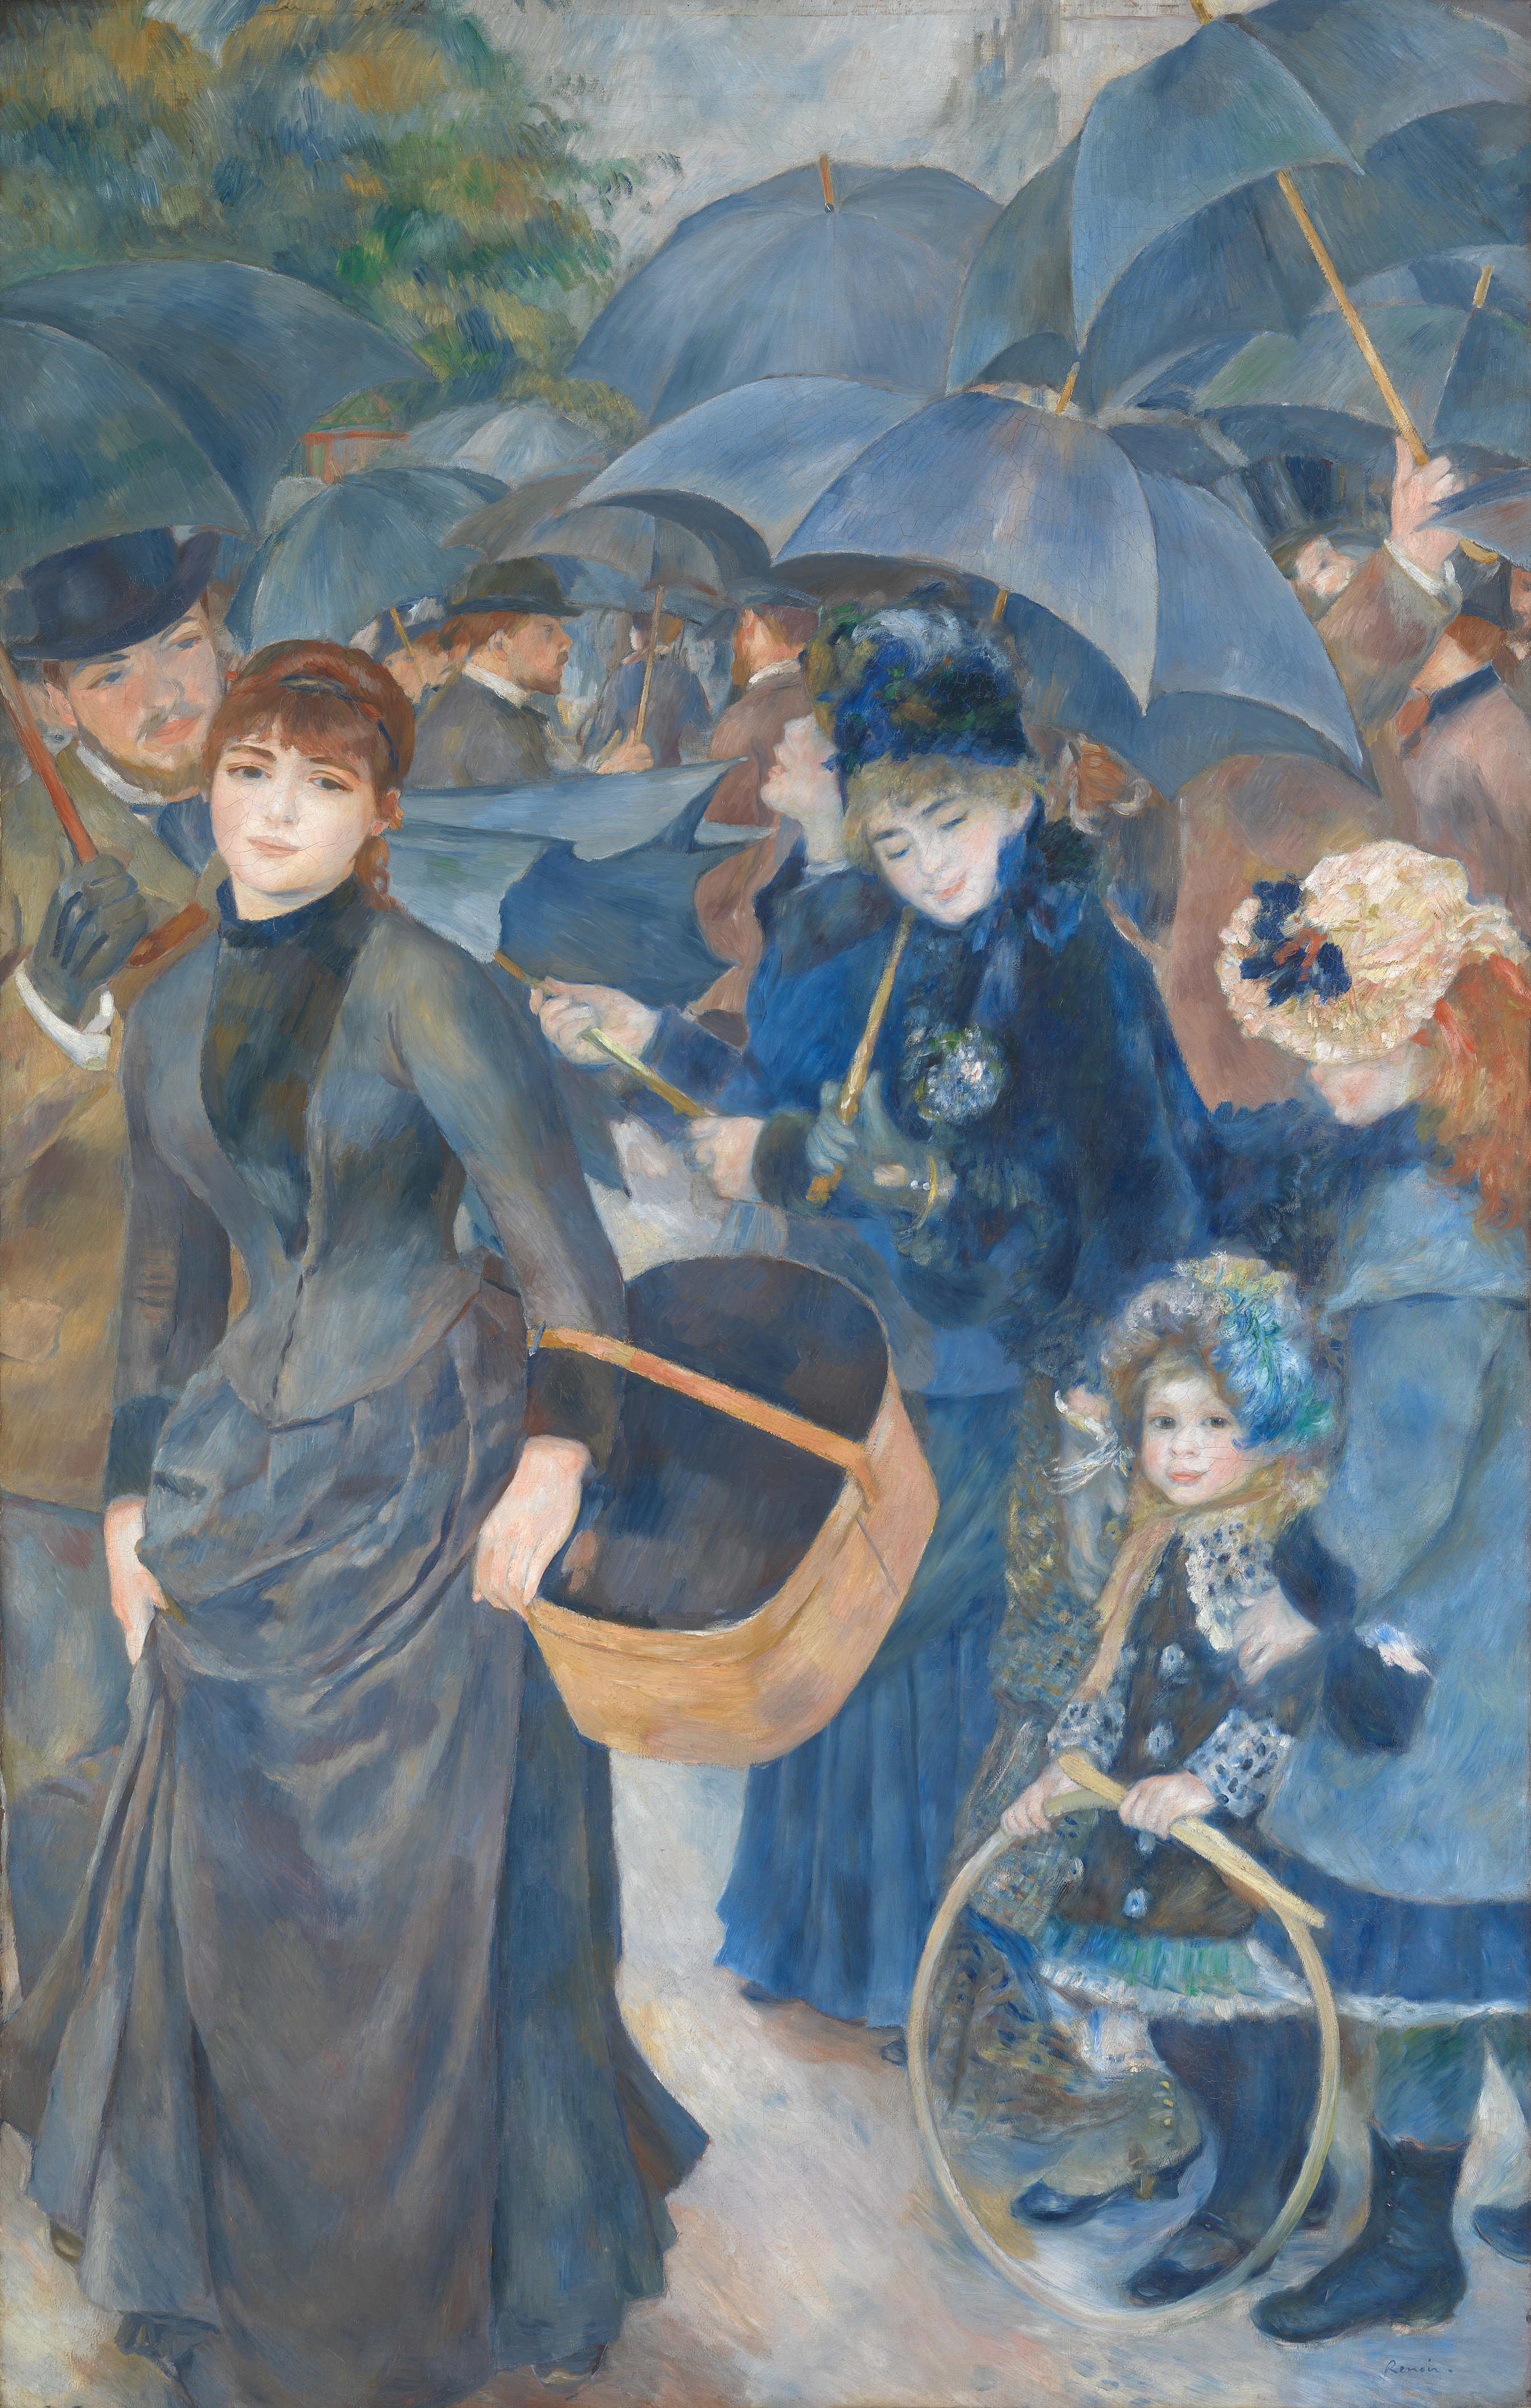 Şemsiyeler by Pierre-Auguste Renoir - 1883 - 180 × 115 cm 